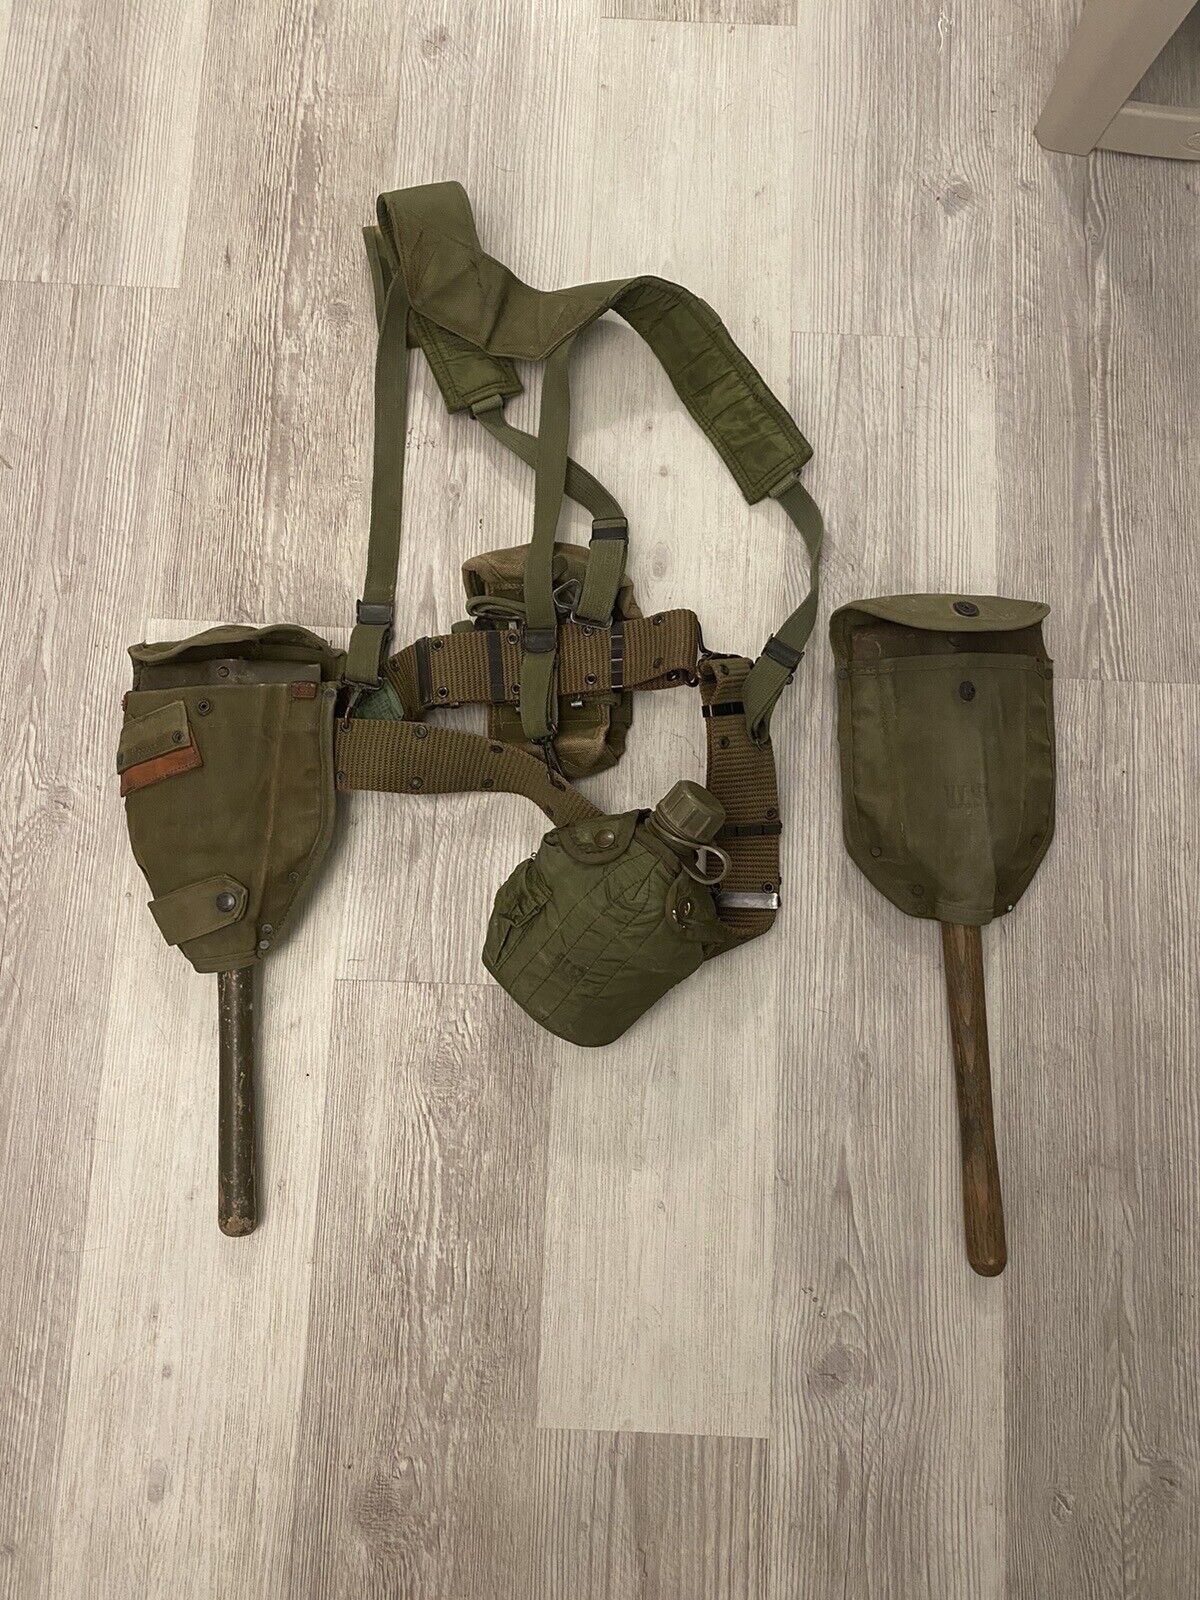 WWII Vintage Military Shoulder Harness Suspender Belt w/ Canteen Shovel & Ammo